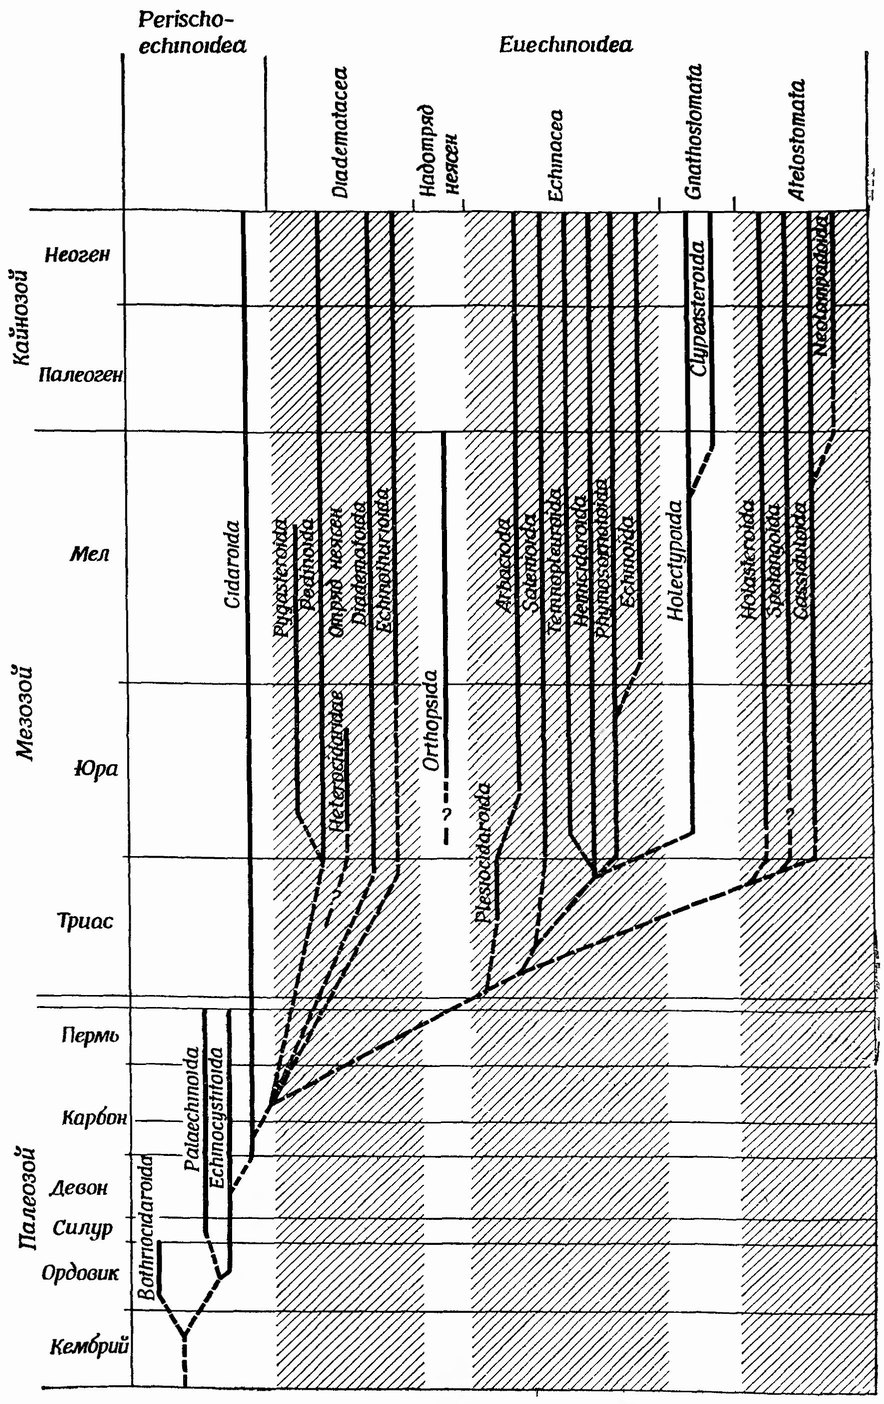 Фиг. 46. Филогения класса Echinoidea, основанная на стратиграфическом распространении представителей разных отрядов и предполагаемом эволюционном родстве. Перерыв между пермью и триасом на схеме объясняется изменением вертикального маcштаба [48]